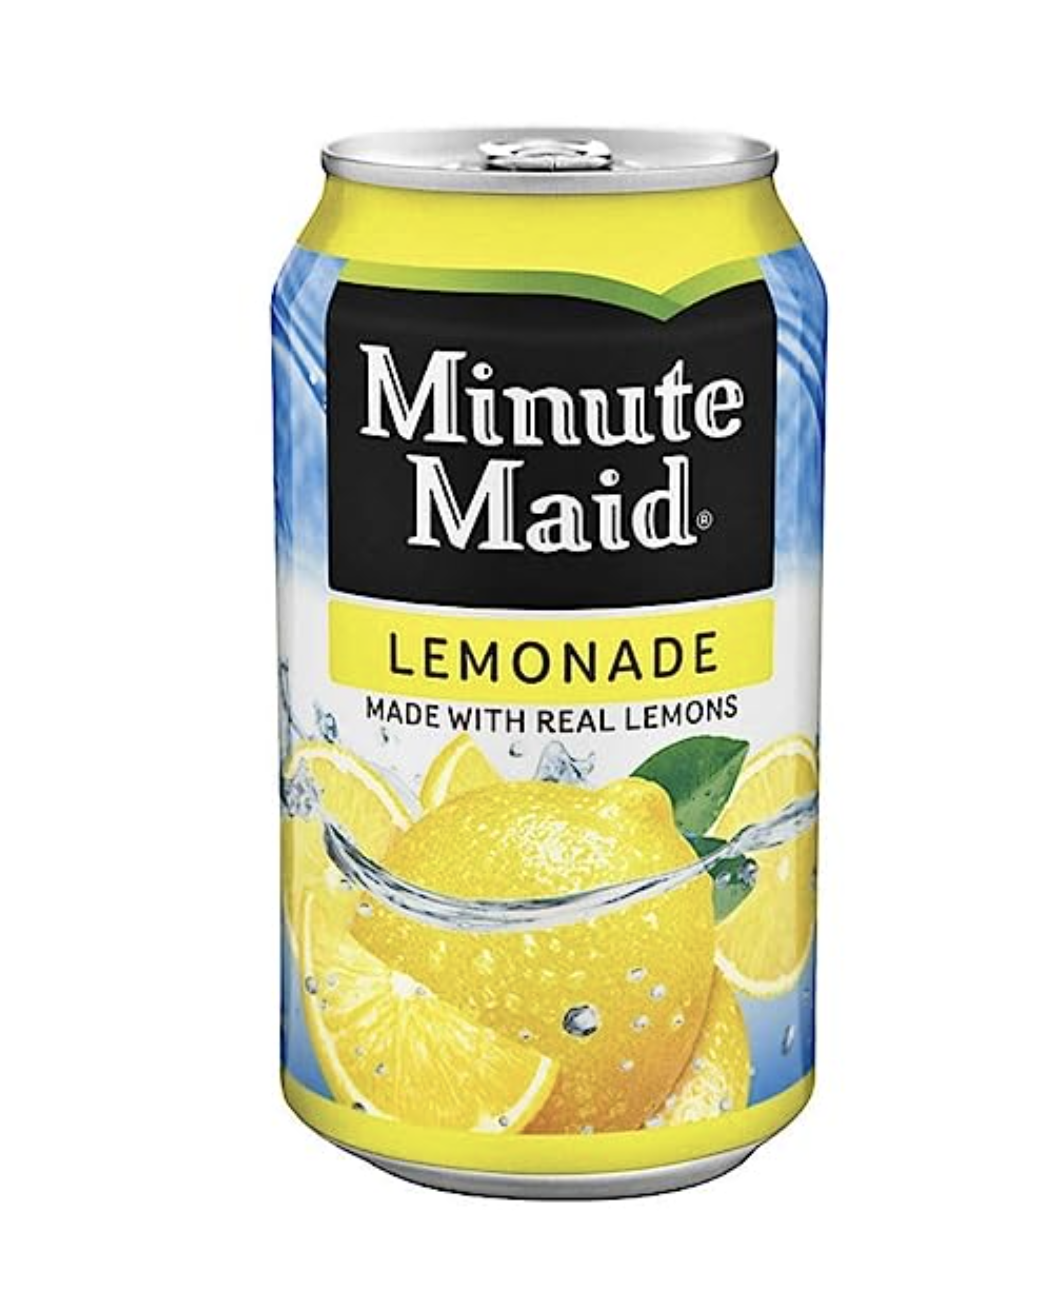 Lemonade - Minute Maid